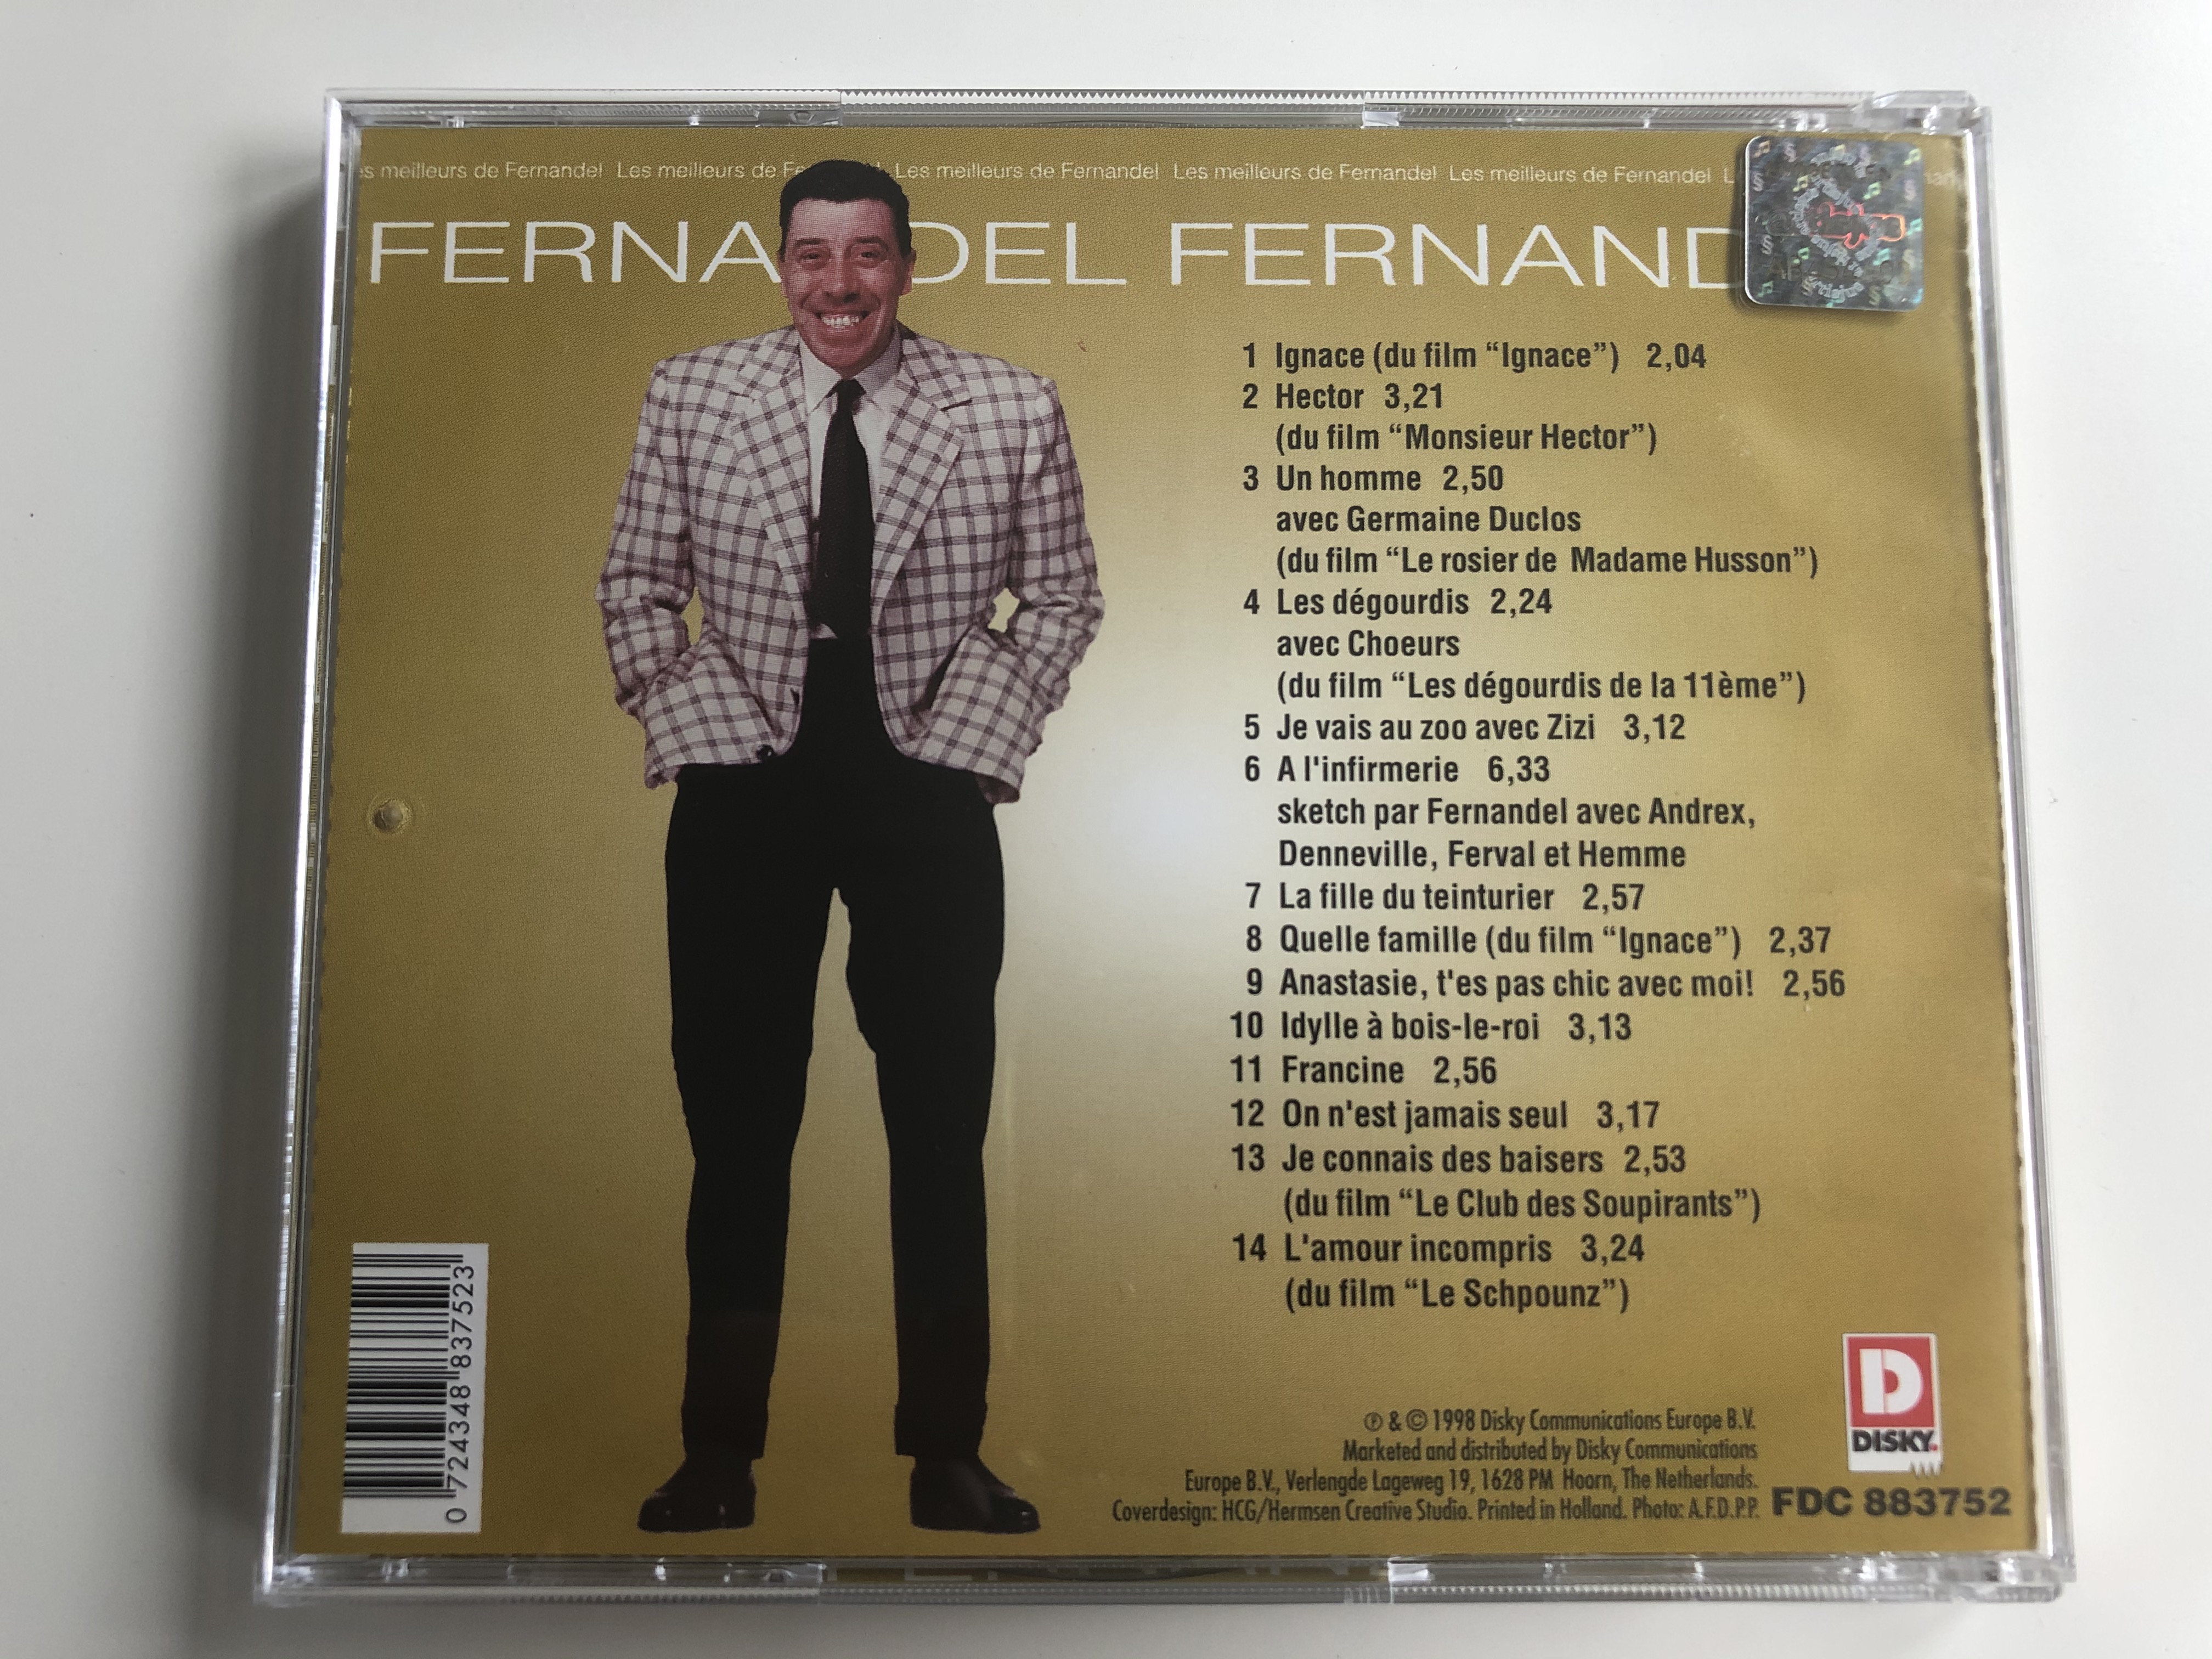 fernandel-les-meilleurs-de-fernandel-un-homme-francine-a-l-infirmerie-ignace-la-fille-du-teinturier-on-n-est-jamais-seul-disky-audio-cd-1998-fdc-883752222-5-.jpg